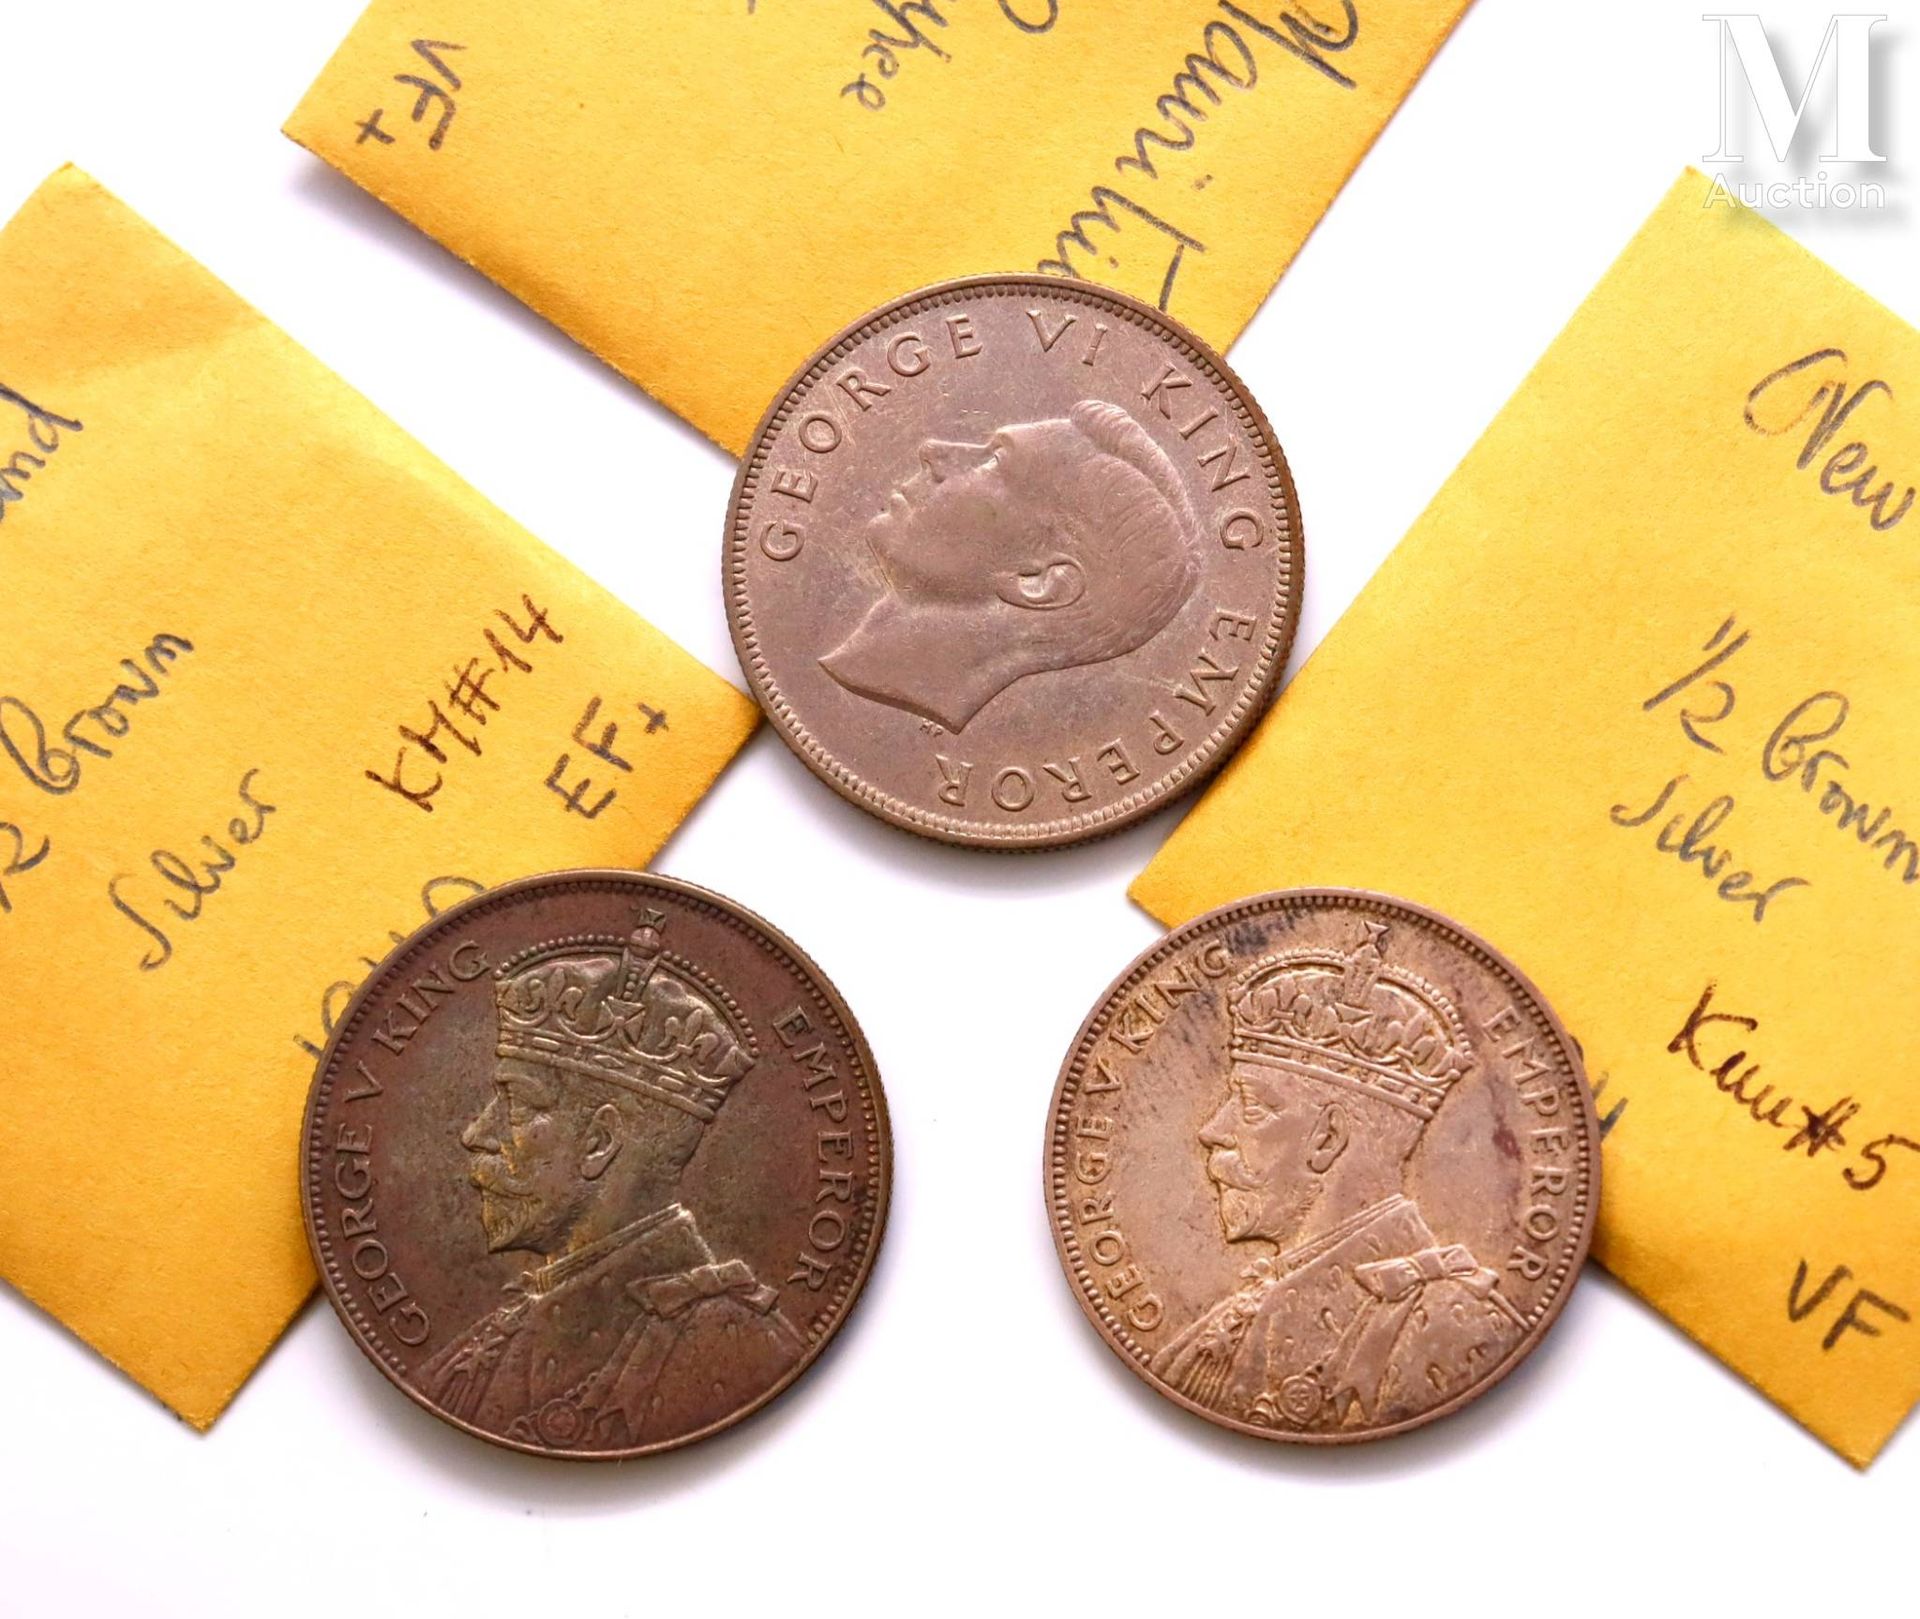 Angleterre - Divers Lot de trois monnaies d'1/2 Crown comprenant :

-Une 1/2 Cro&hellip;